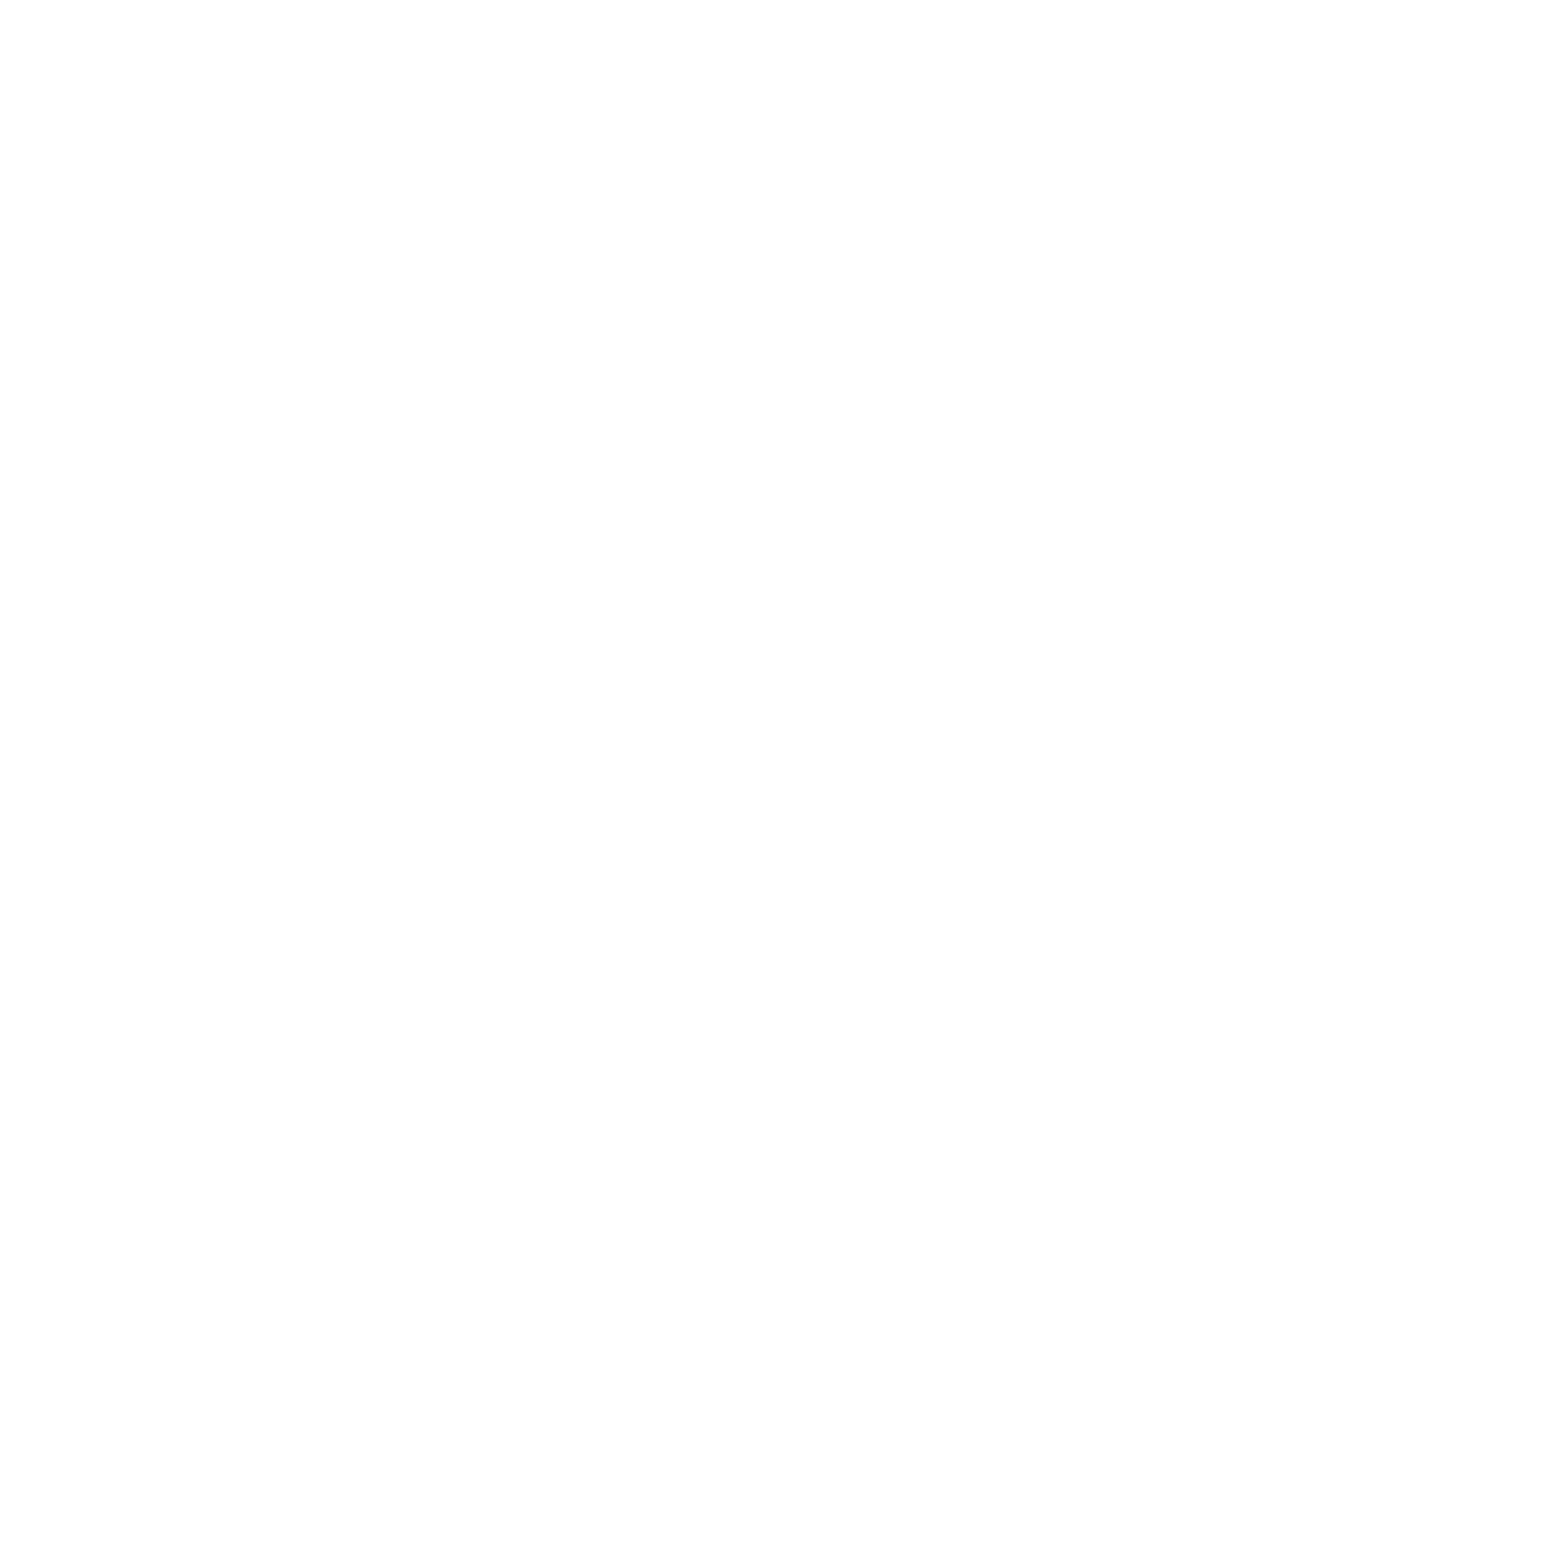 Lennox logo for dark backgrounds (transparent PNG)